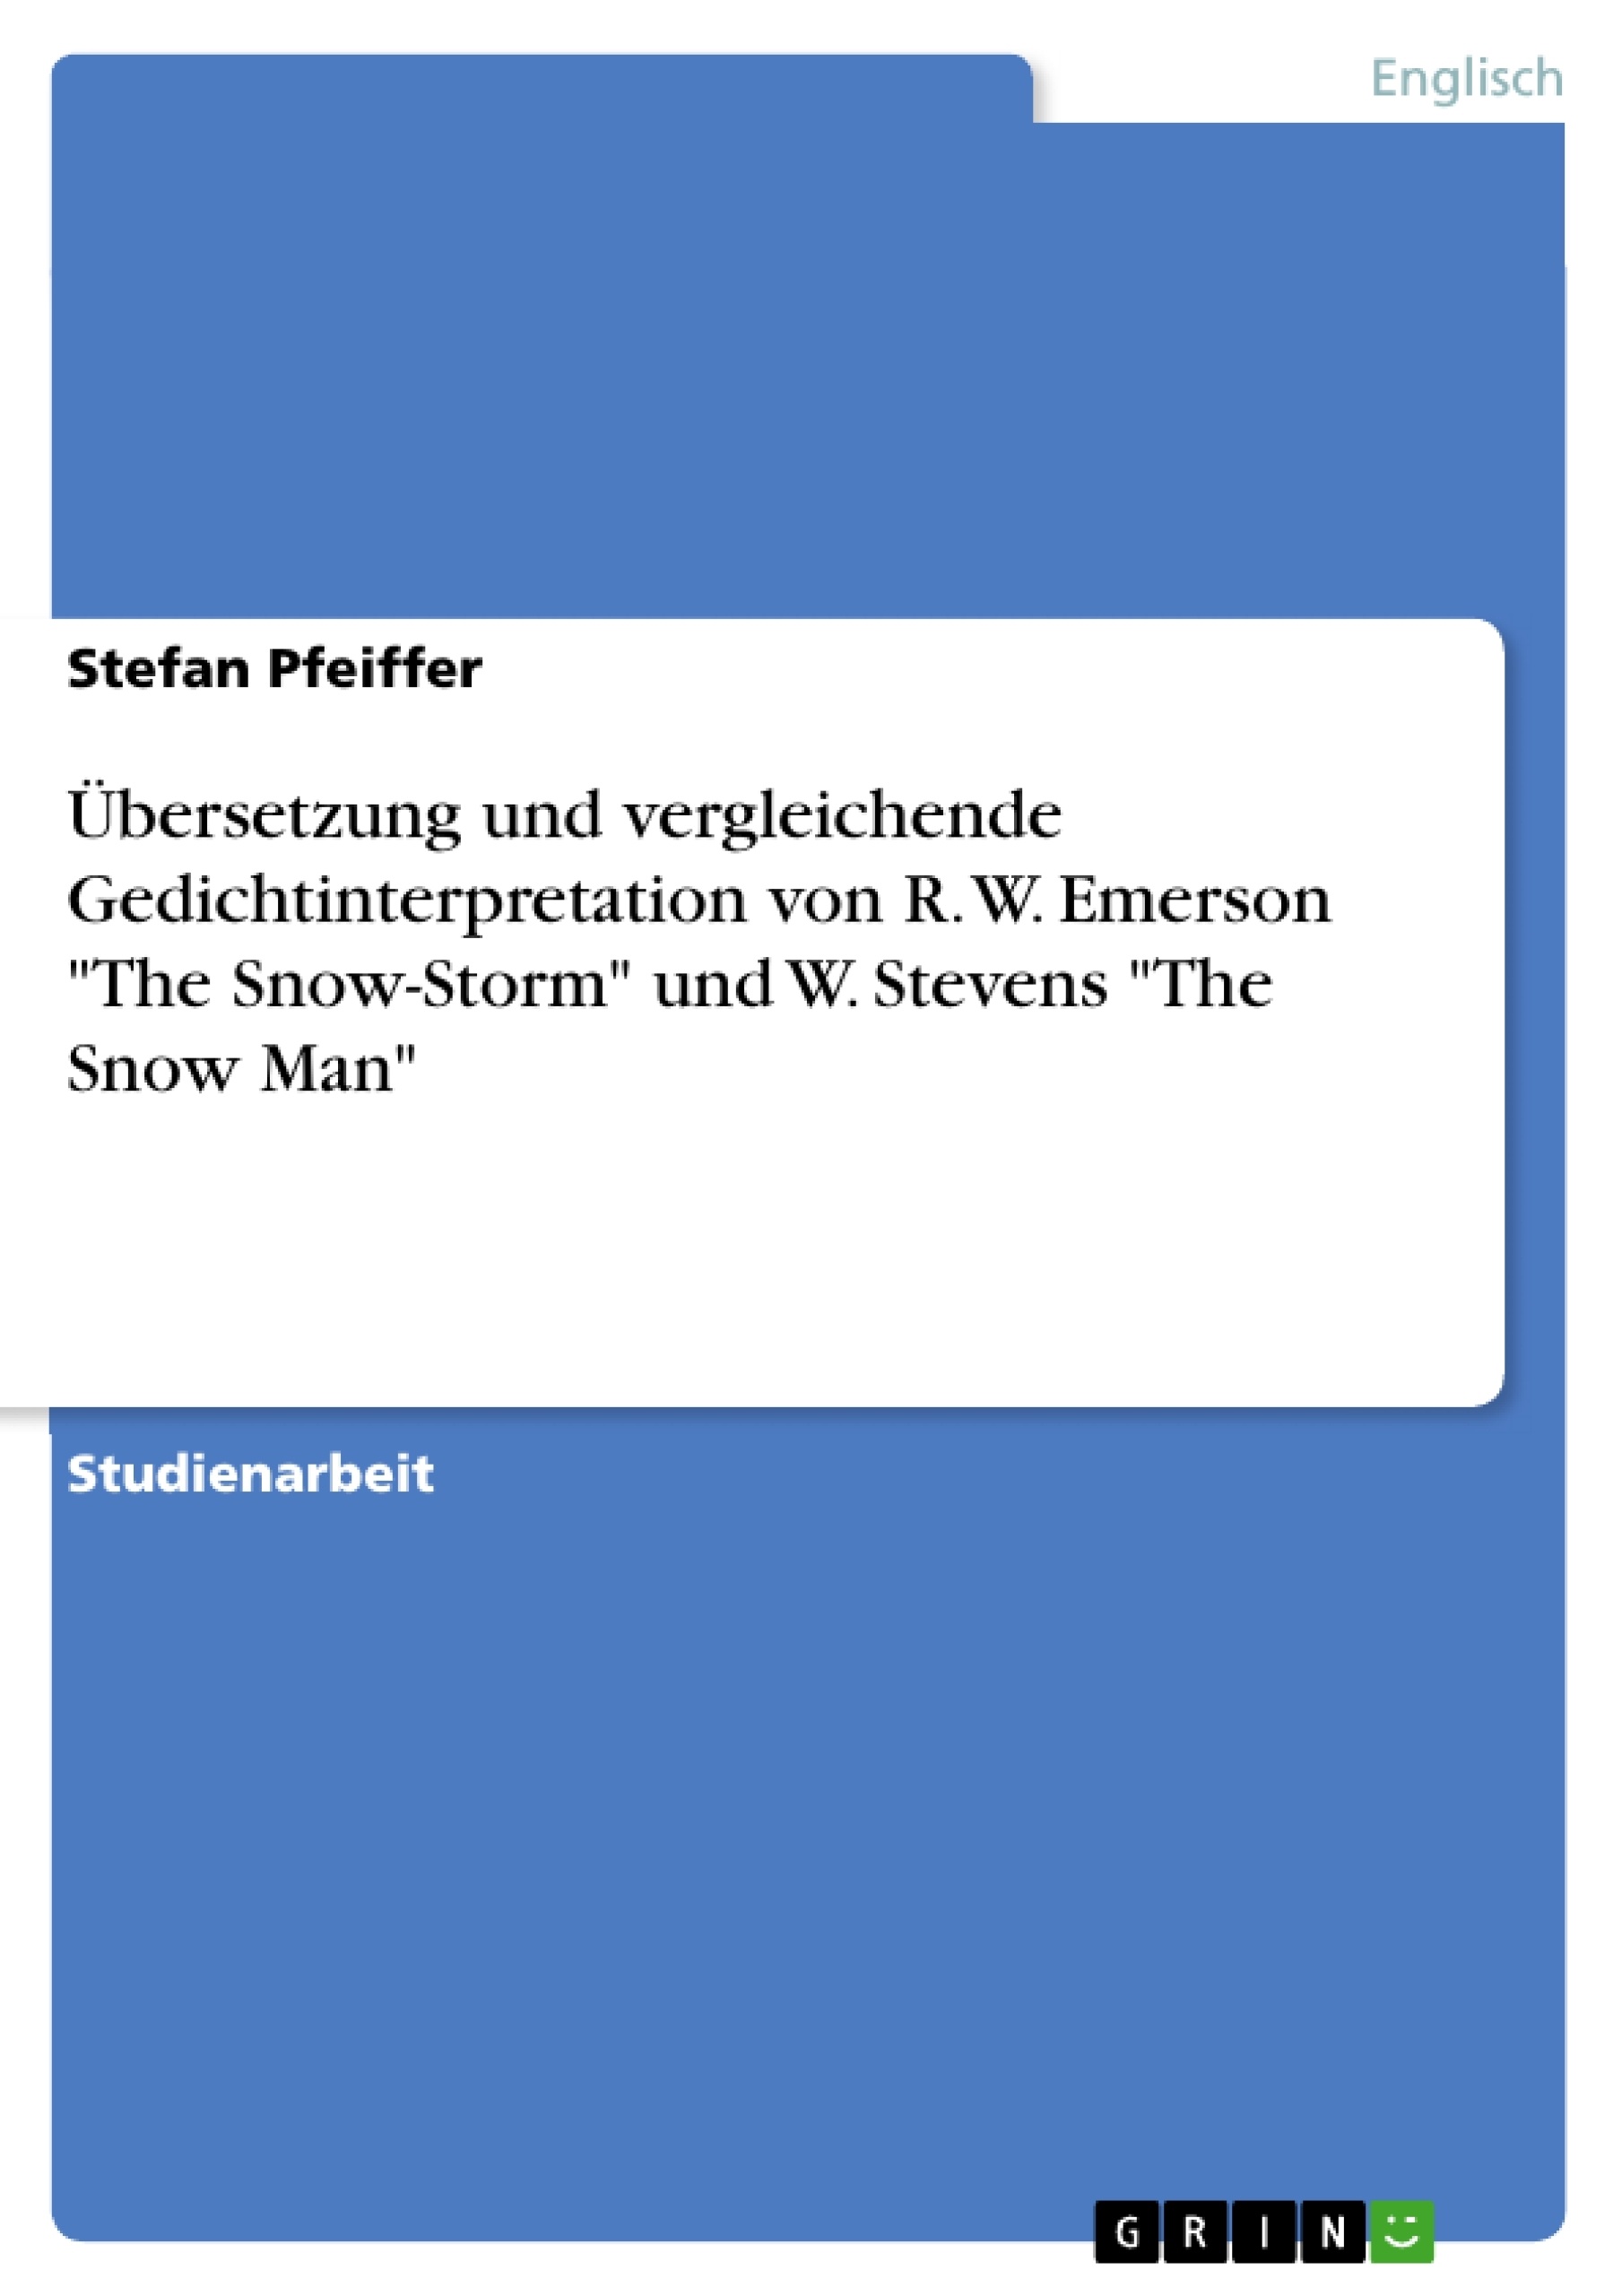 Titre: Übersetzung und vergleichende Gedichtinterpretation von R. W. Emerson "The Snow-Storm" und W. Stevens "The Snow Man"